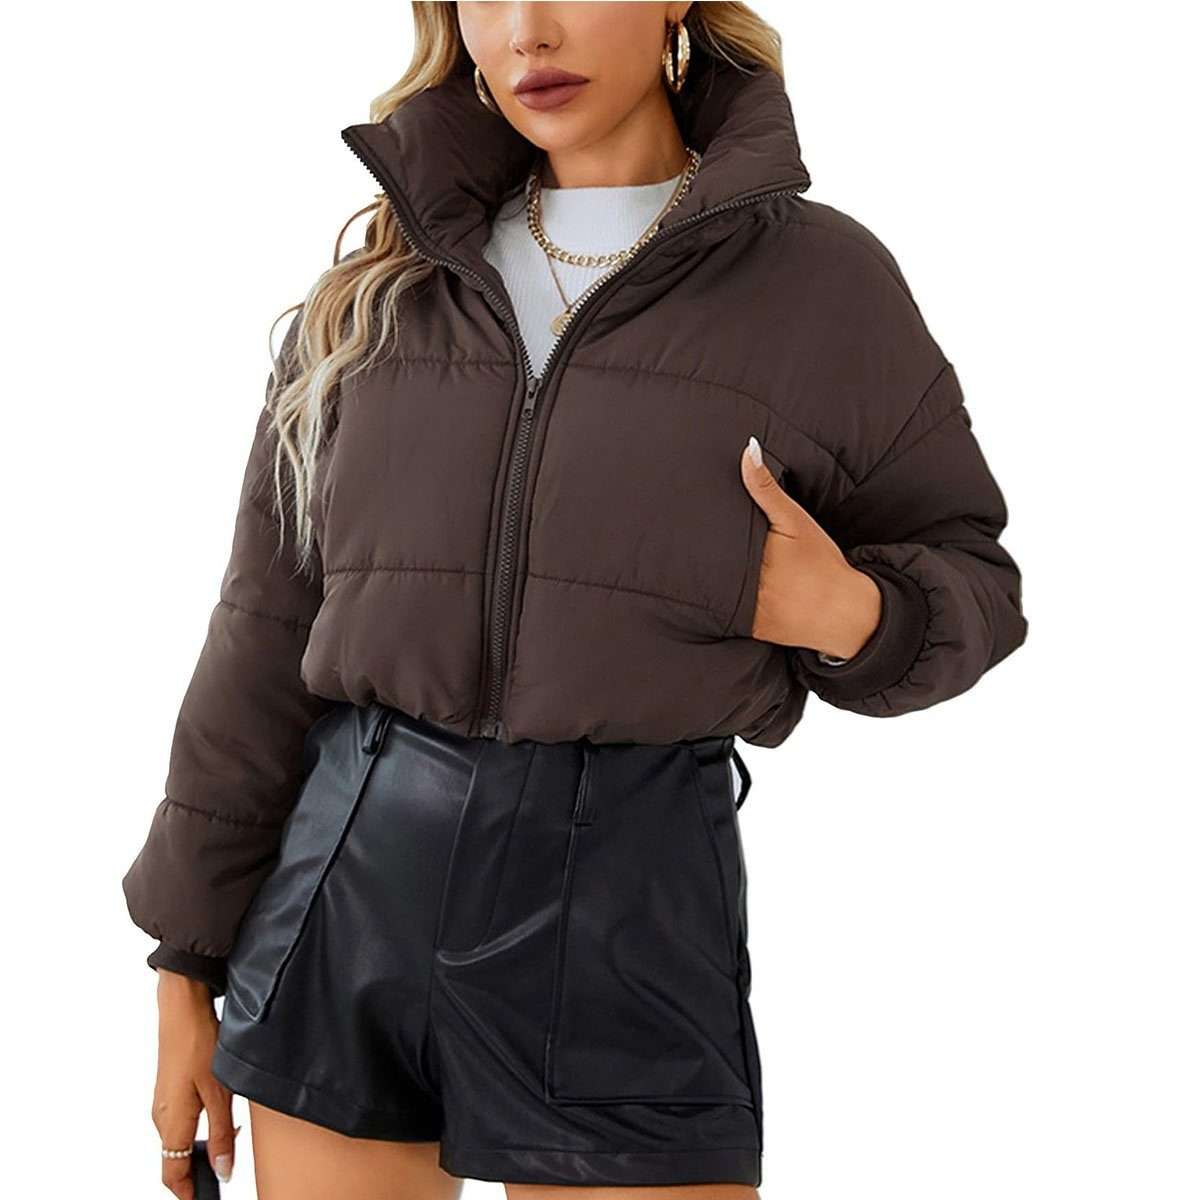 Пуховик, укороченная куртка-пуховик для женщин.Короткая зимняя куртка с воротником-стойкой для женщин.